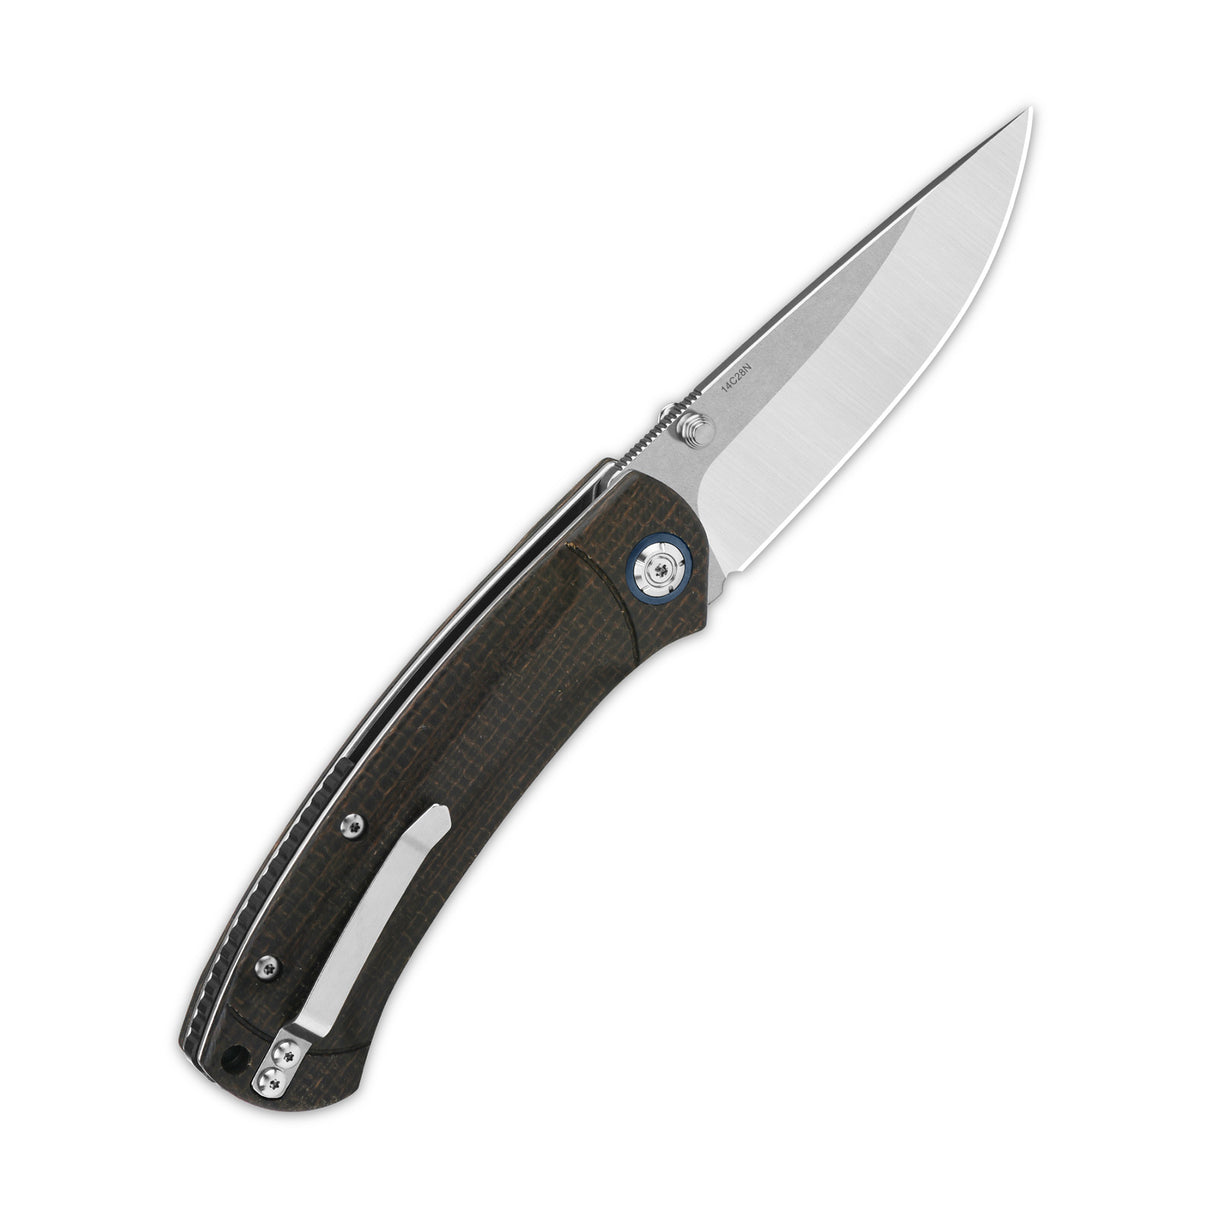 QSP Copperhead Liner Lock Pocket Knife 14C28N Blade Micarta Handle